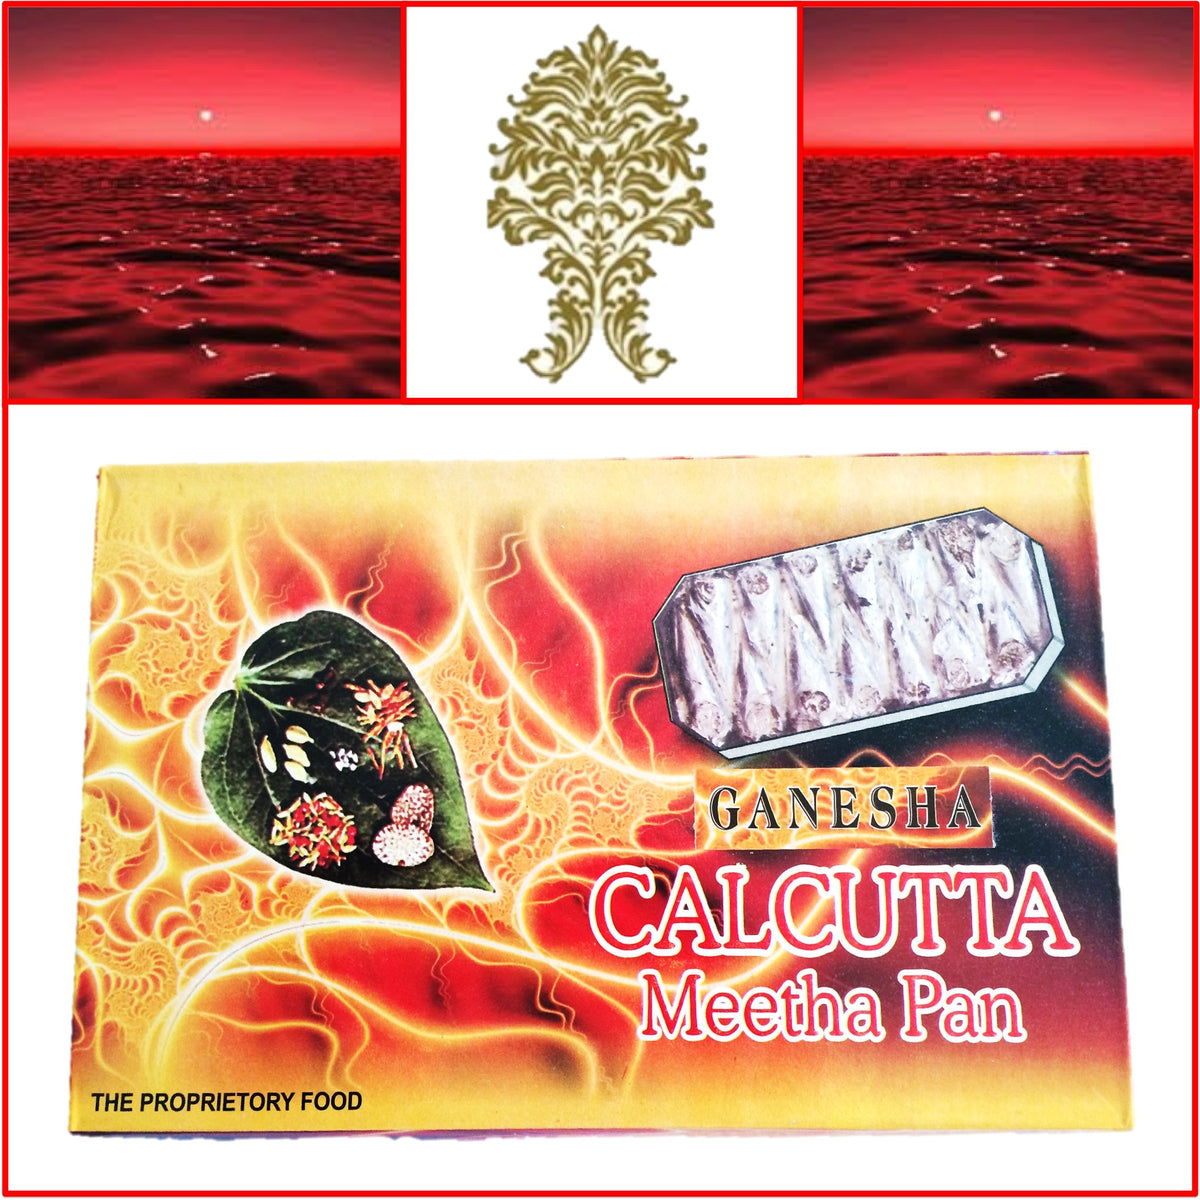 ONE Box Calcutta Mitha Pan (Paan) 14 Pieces Each